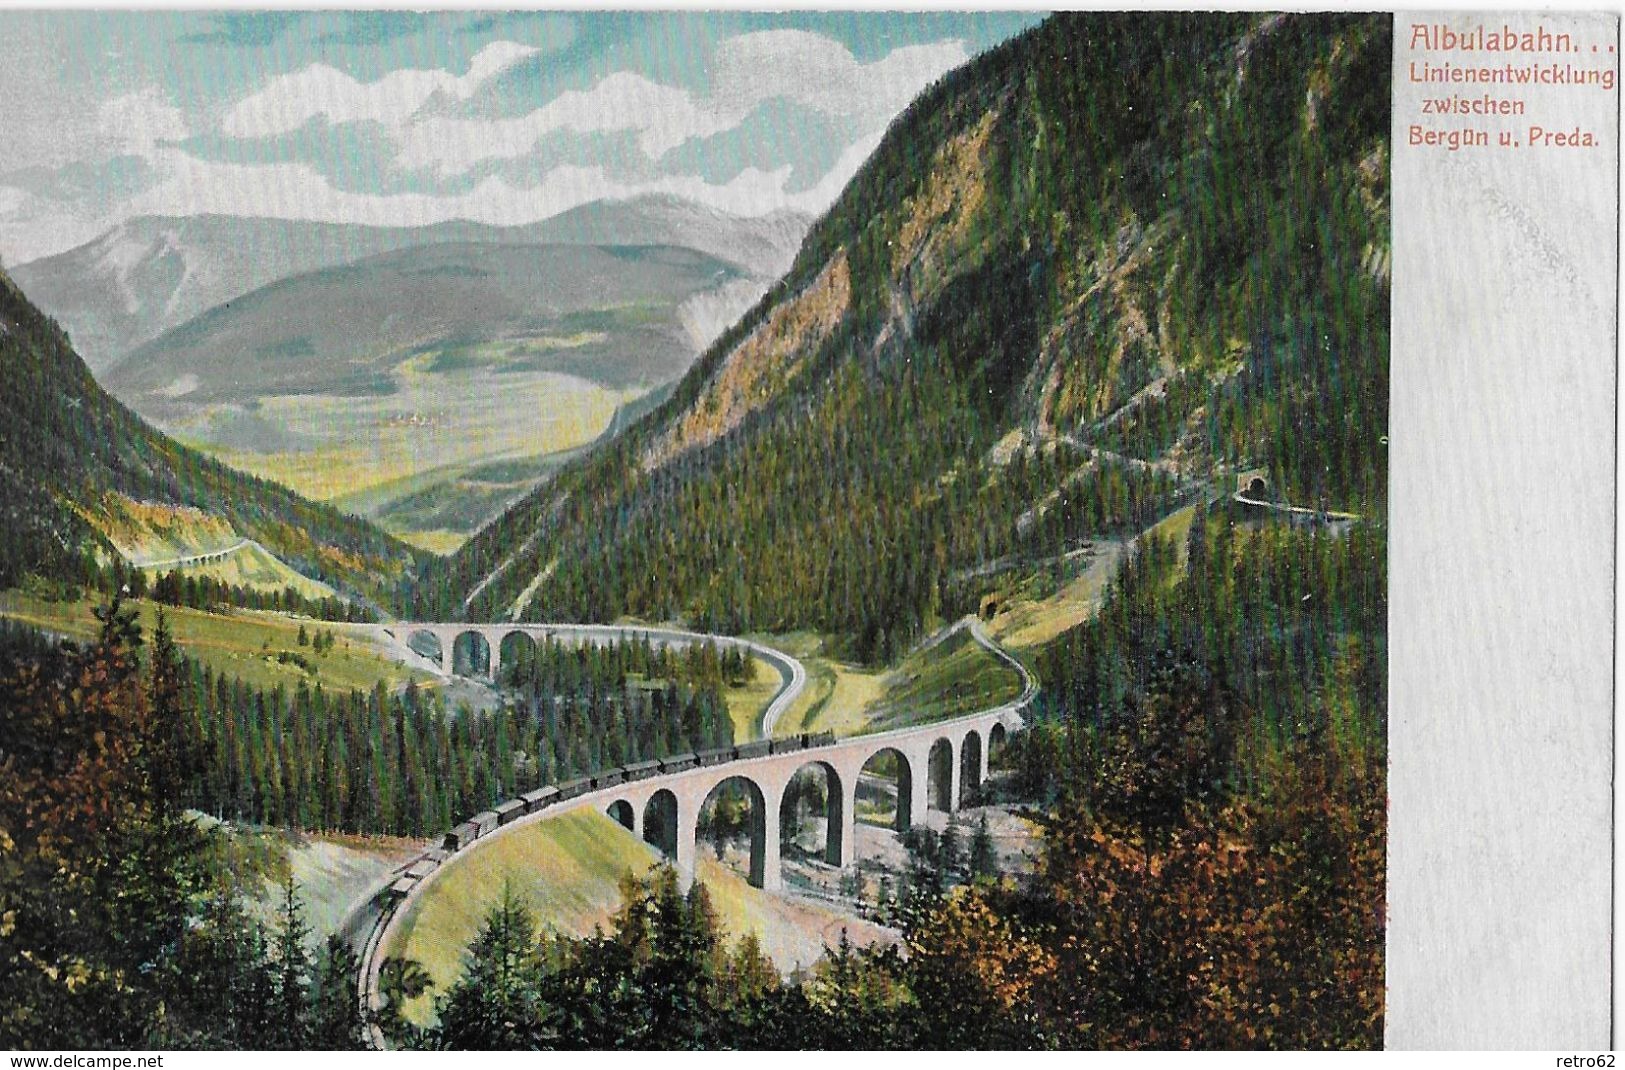 ALBULABAHN - Linienentwicklung Zwischen Bergün Und Preda Mit Dampfzug, Ca.1910 - Bergün/Bravuogn